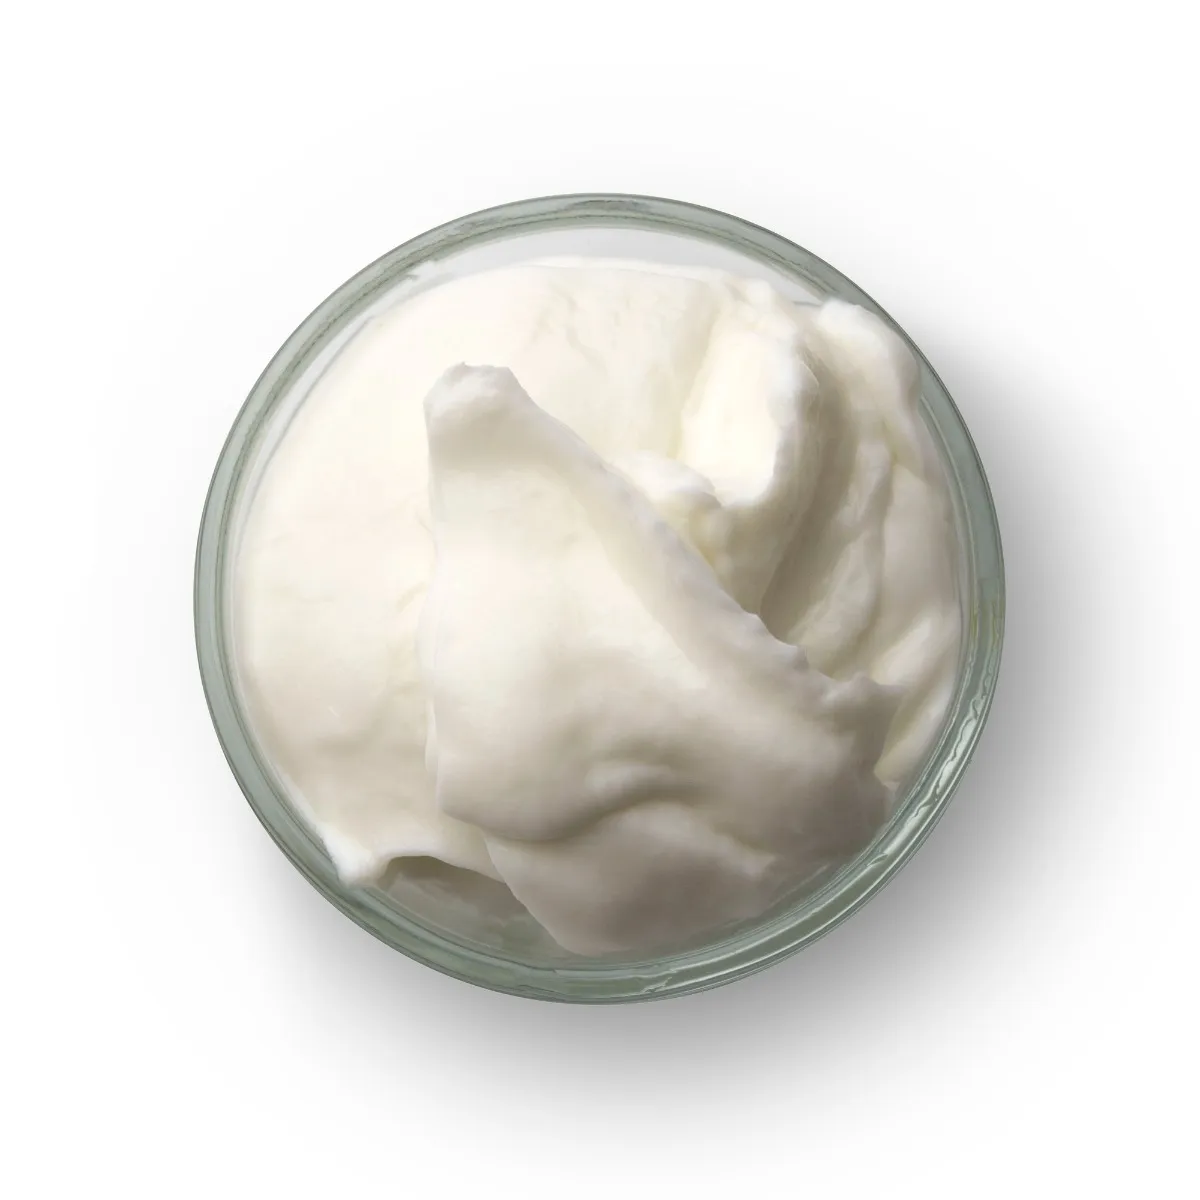 Collagen Complex Anti Aging Cream - MQO 25 pcs